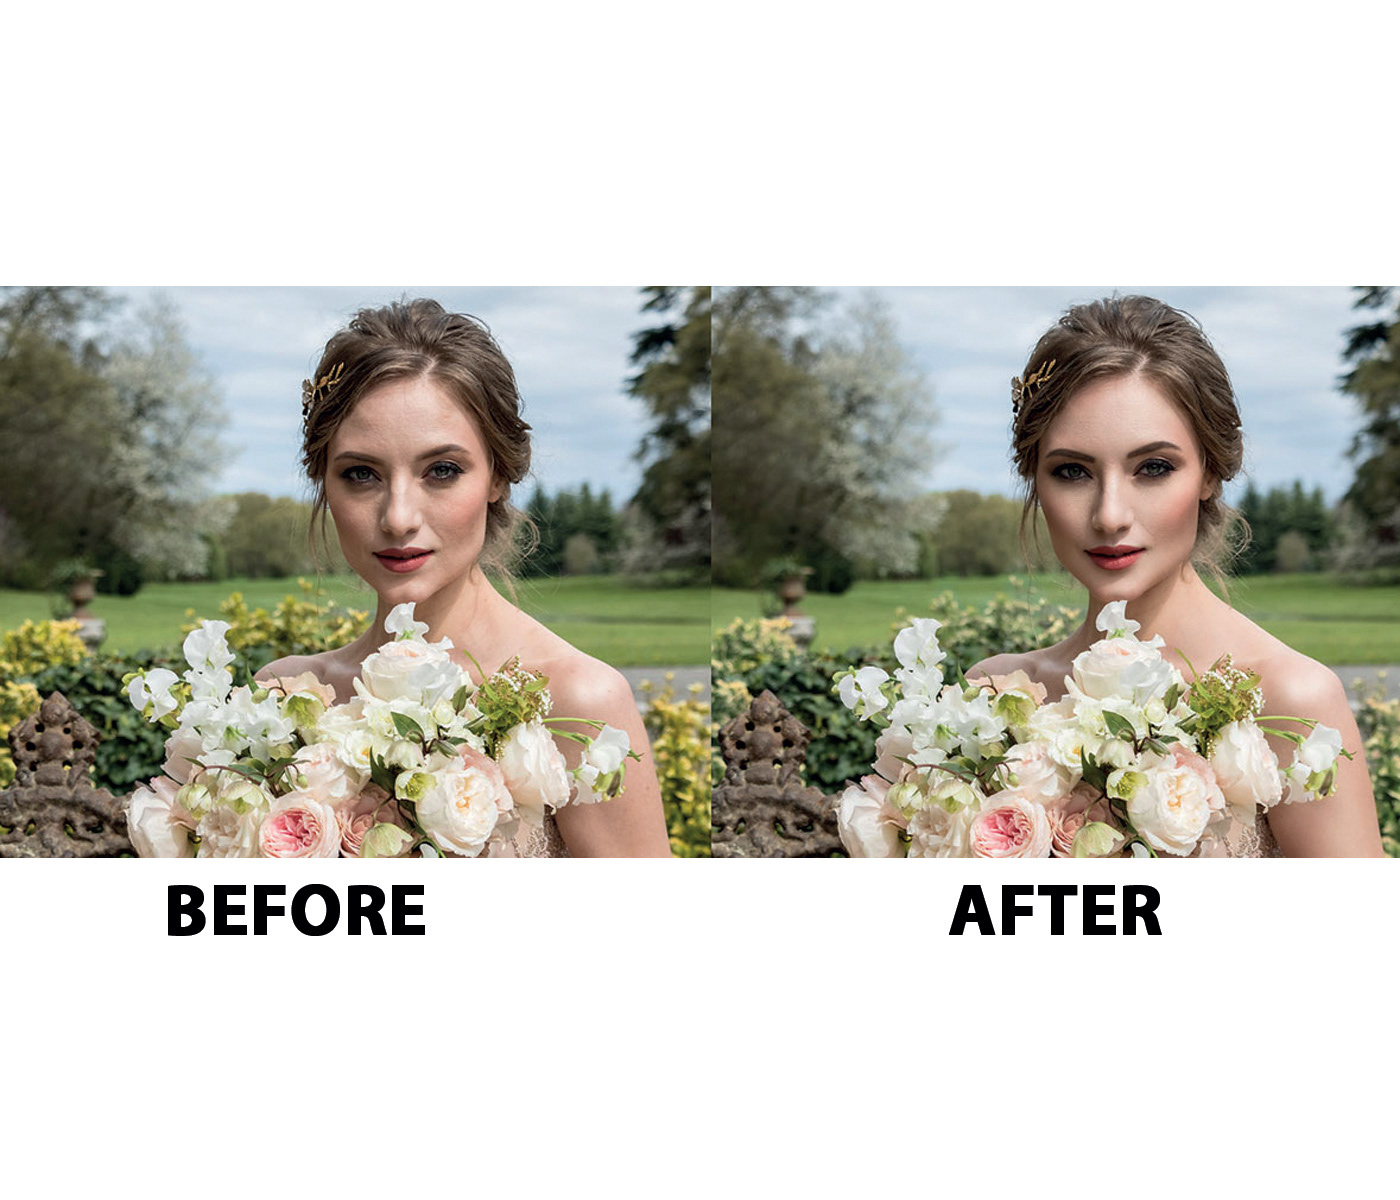 Wedding Photography wedding retouchig enhancement photo editing Adobe Photoshop